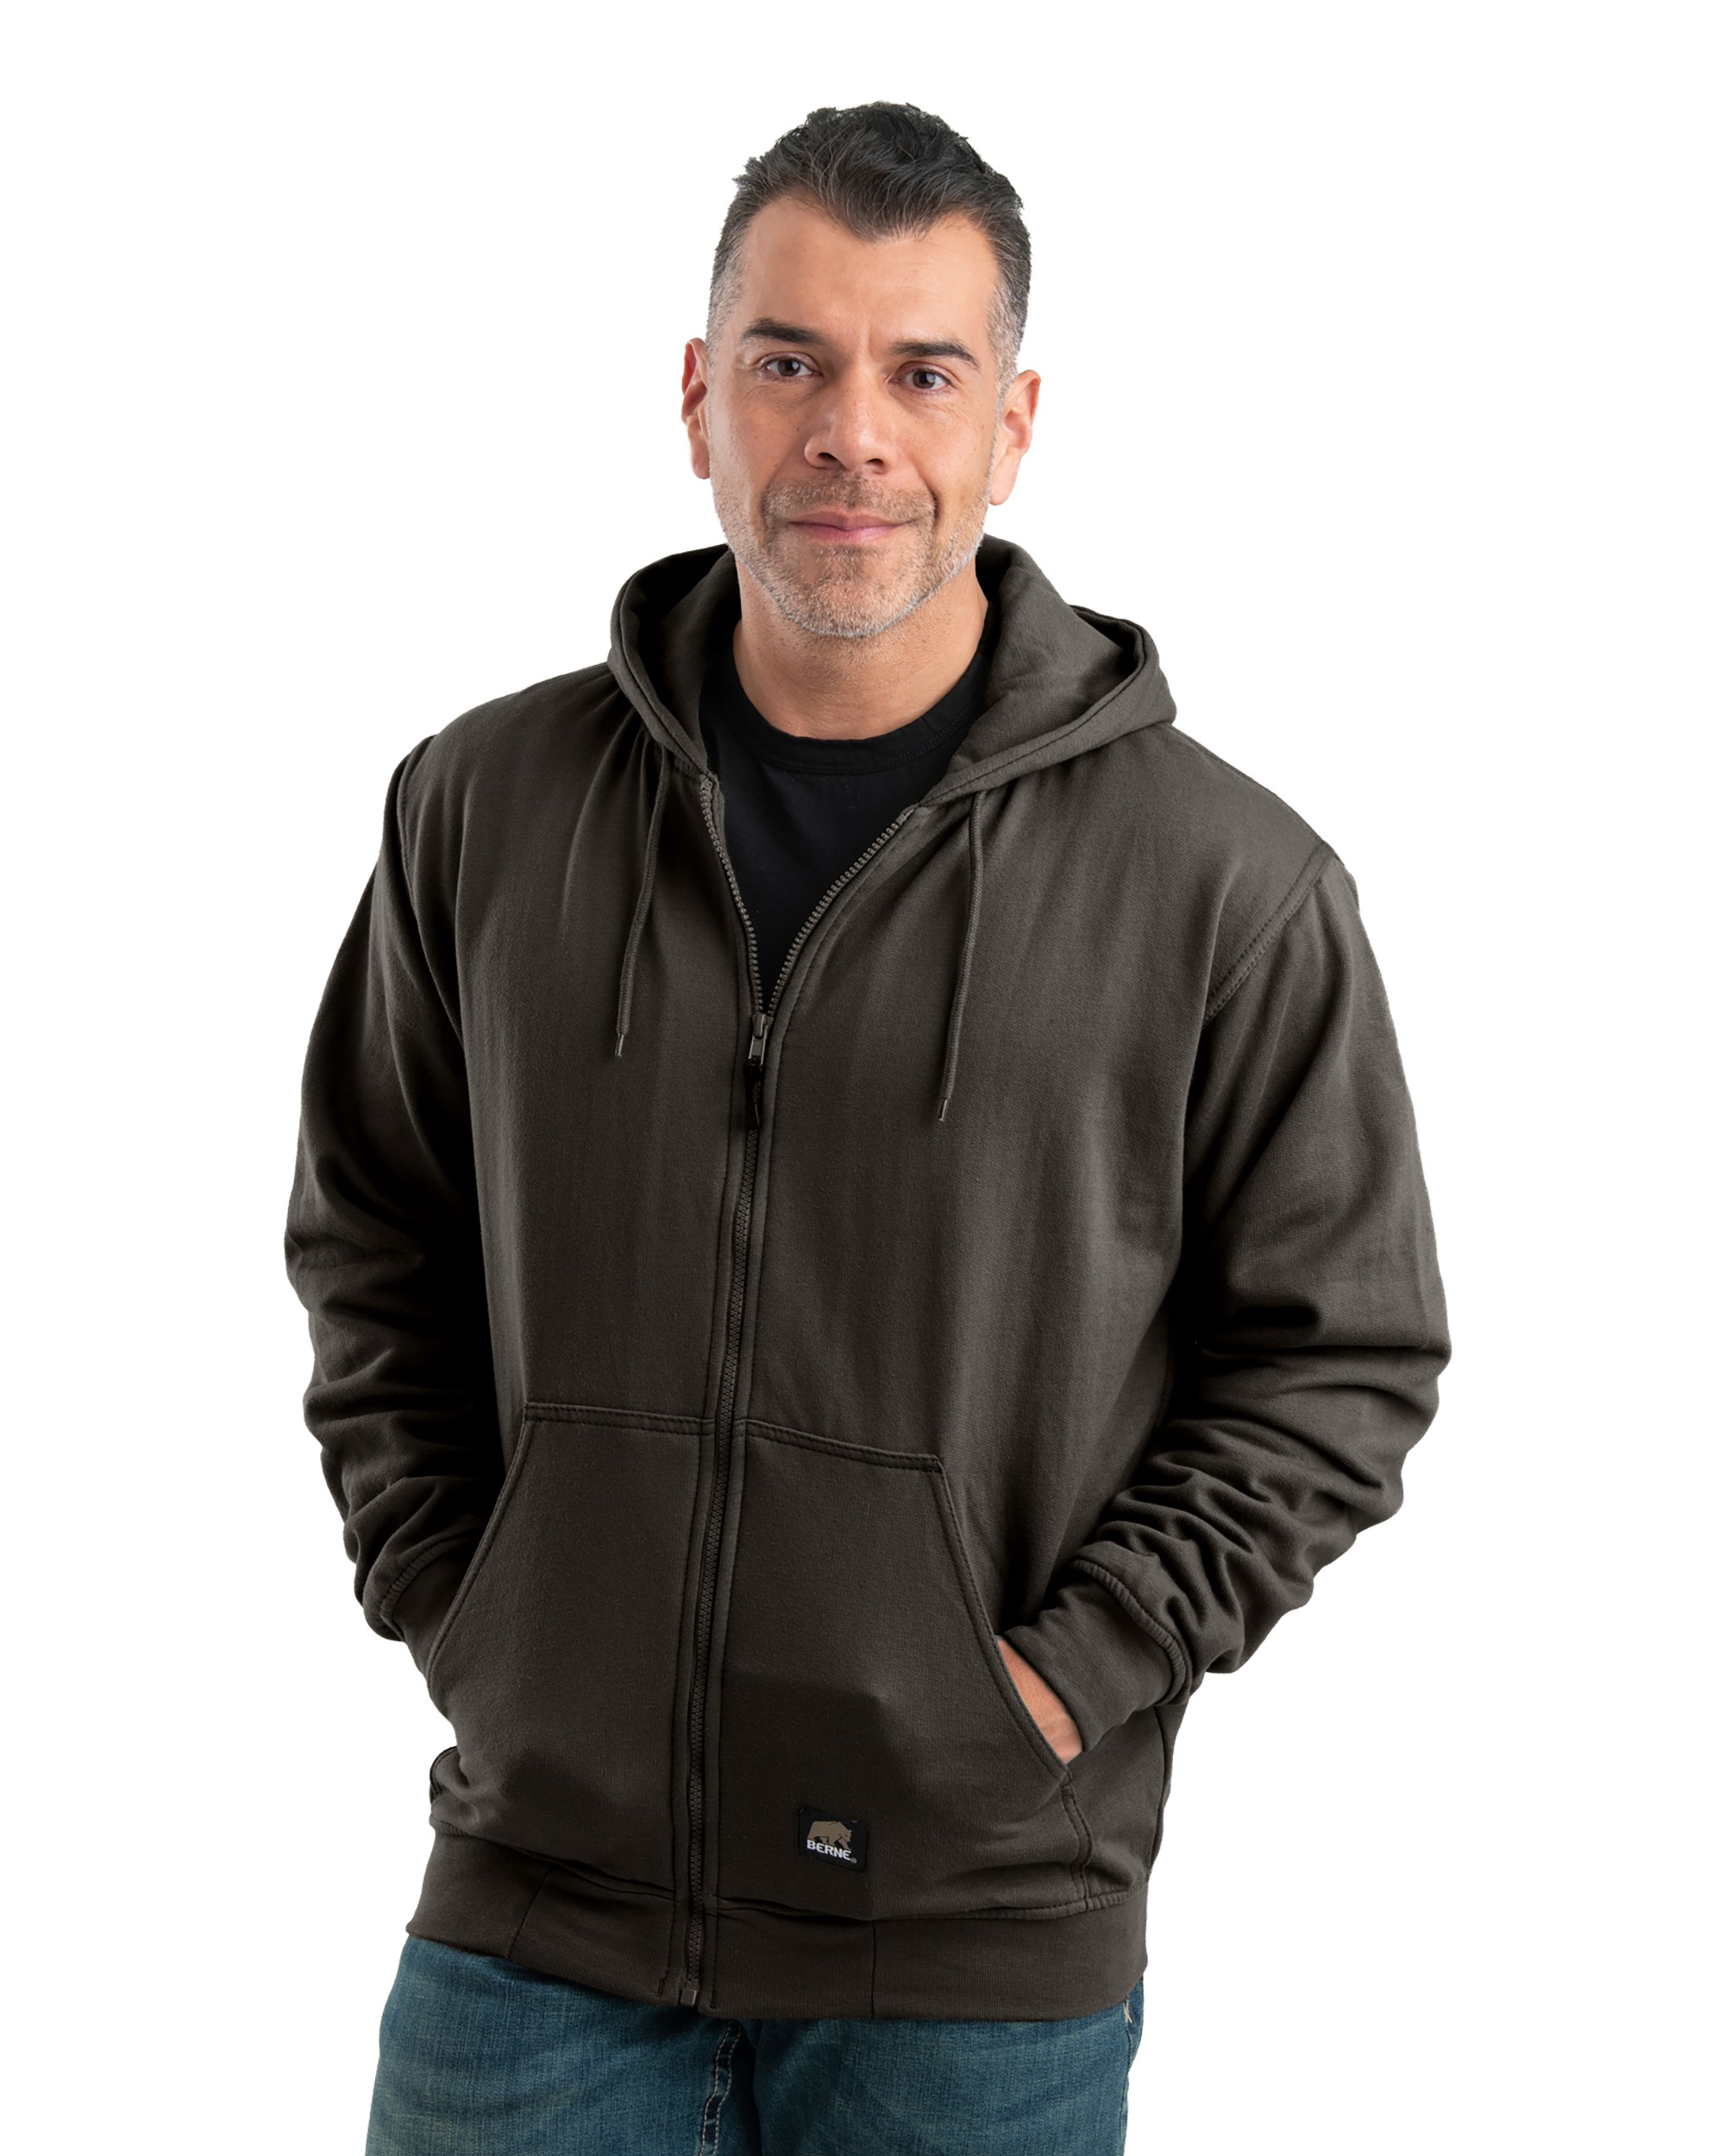 Berne Workwear® SZ101 Heritage Thermal Lined Hooded Sweatshirt